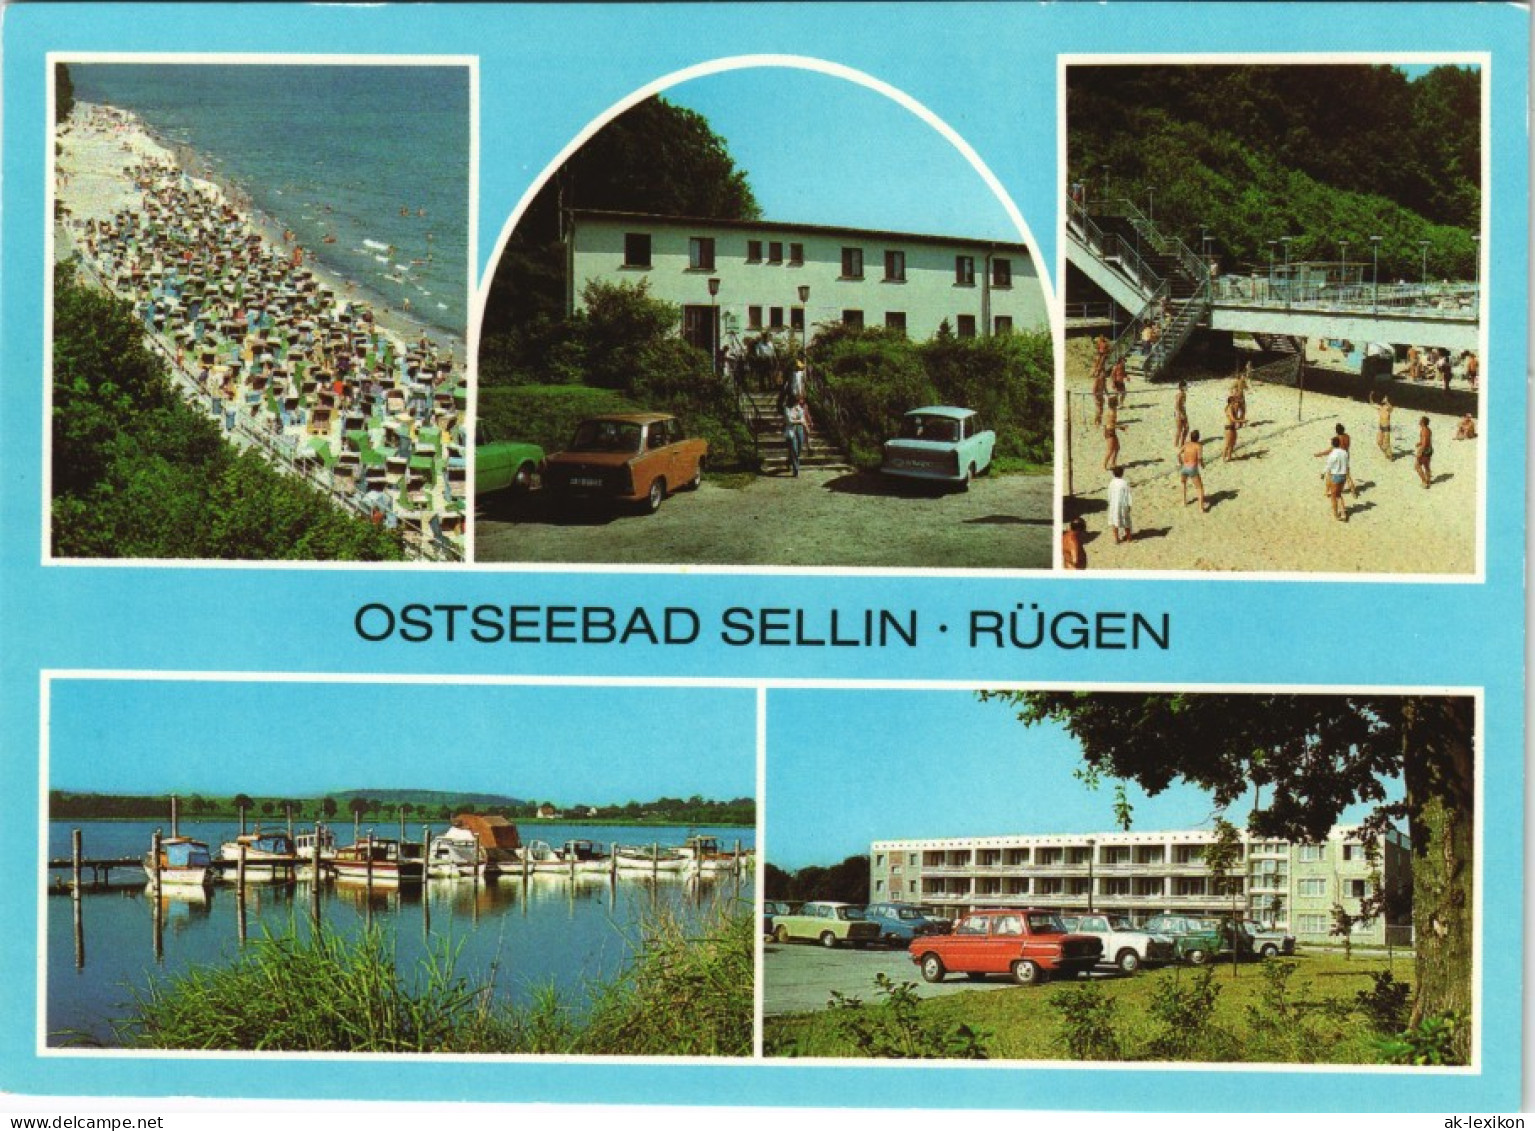 Sellin Strand, FDGB-Erholungsheim "Waldfrieden" Freitreppe Zum Strand  1982 # - Sellin